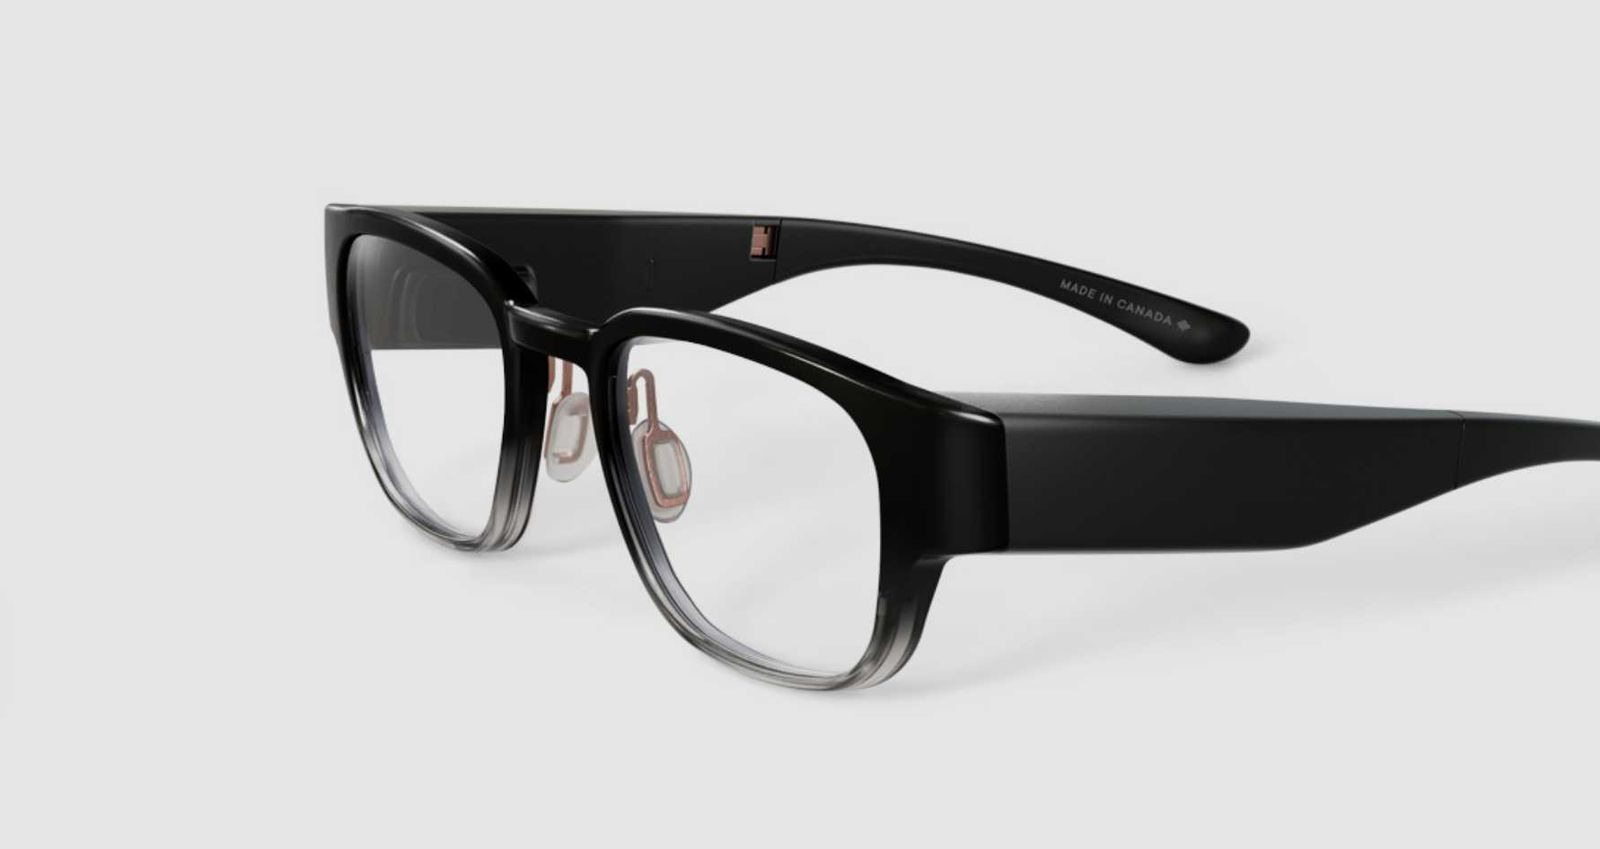 Google compra la empresa de gafas de realidad aumentada North